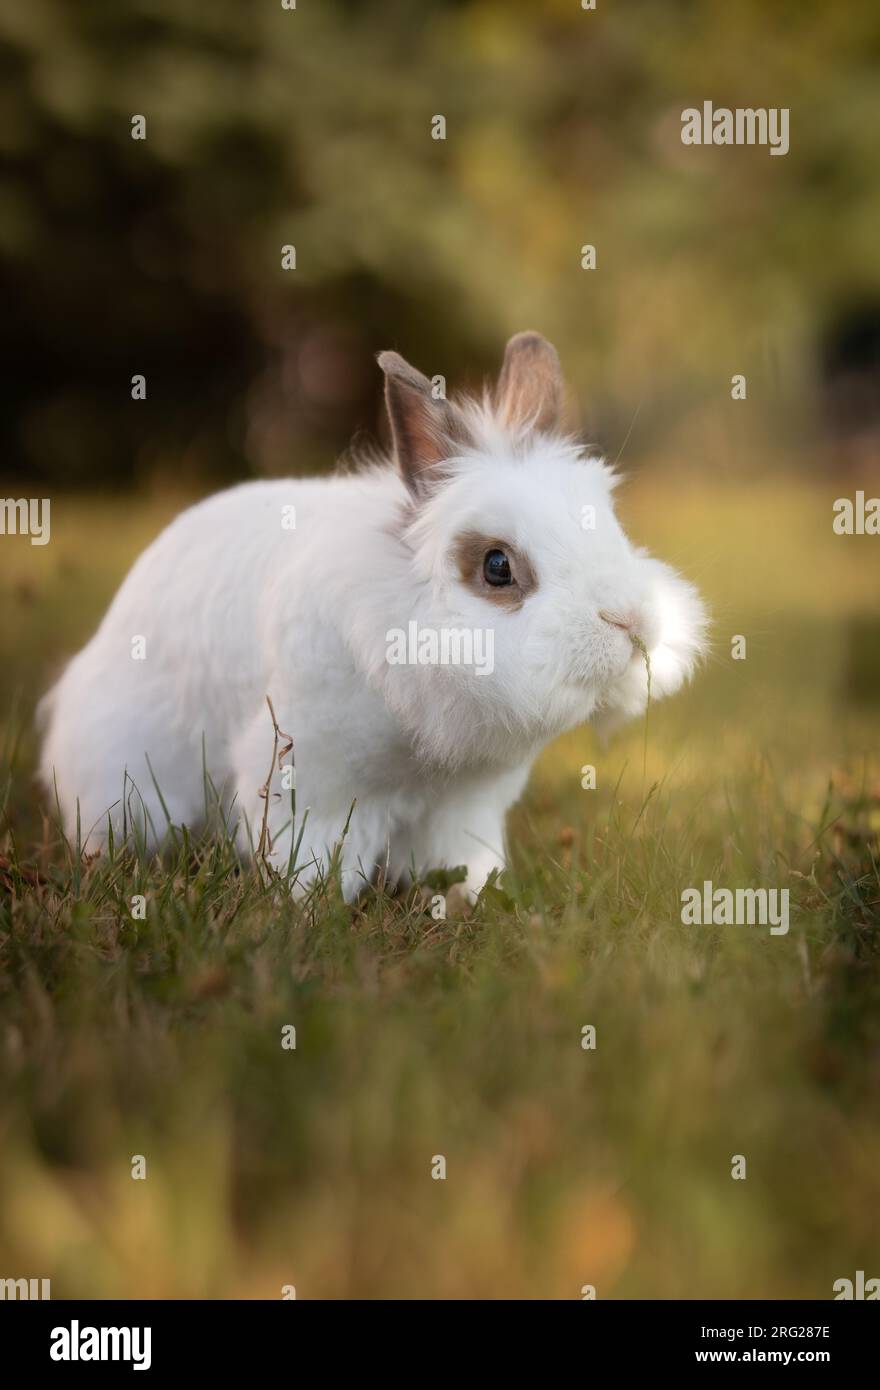 Retrato vertical del conejo cabeza de león fuera en el jardín. Lindo conejito blanco en hierba. Adorable pequeña mascota doméstica al aire libre. Foto de stock